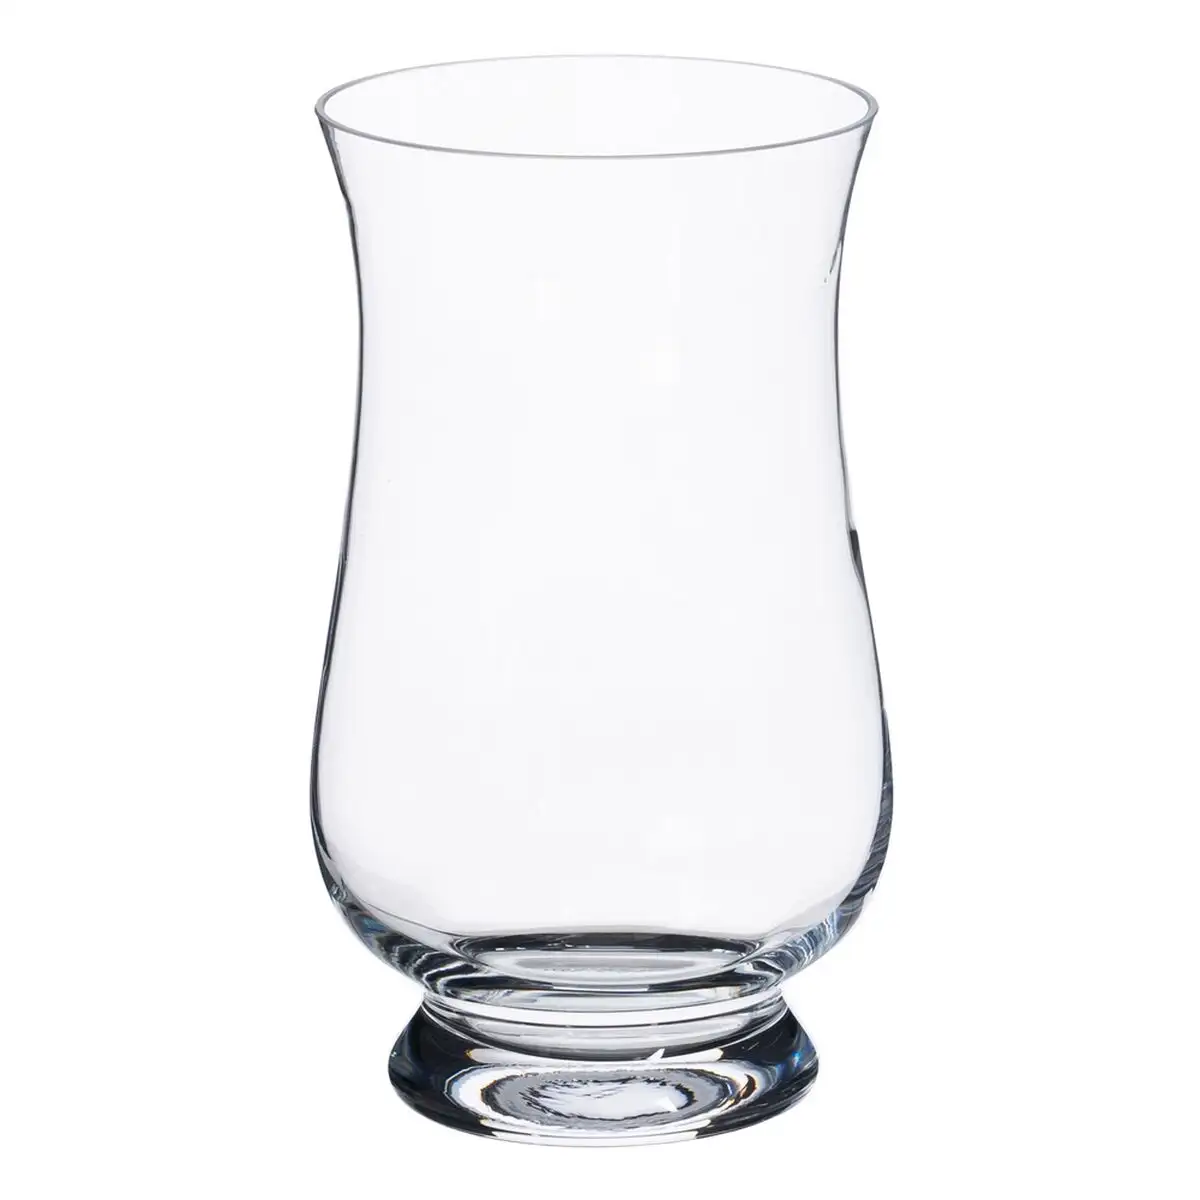 Vase 16 x 13 x 30 cm verre transparent_4668. DIAYTAR SENEGAL - Où Choisir Devient une Découverte. Explorez notre boutique en ligne et trouvez des articles qui vous surprennent et vous ravissent à chaque clic.